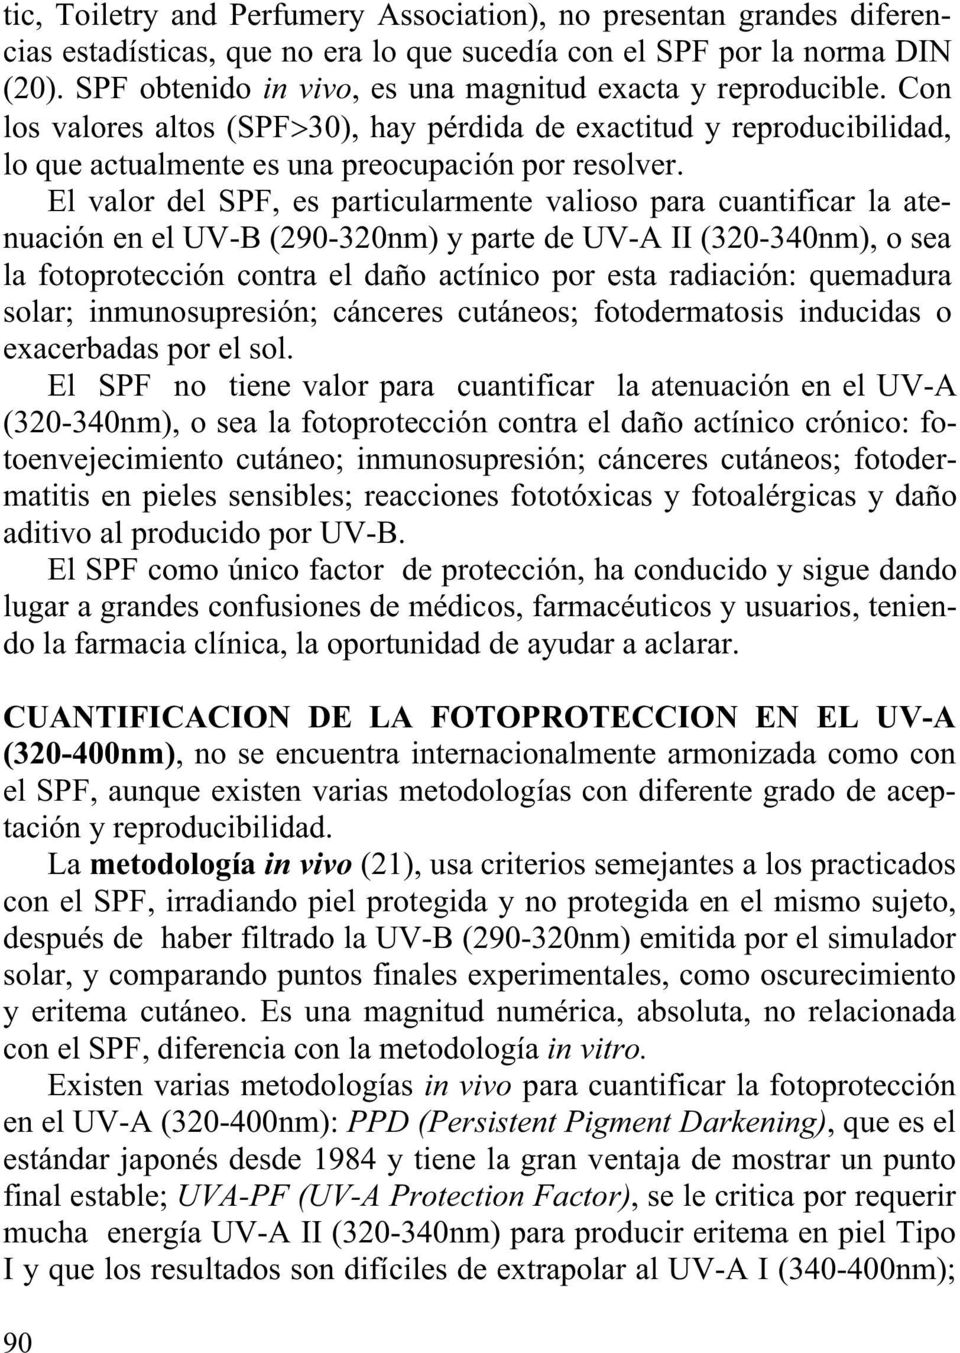 El valor del SPF, es particularmente valioso para cuantificar la atenuación en el UV-B (290-320nm) y parte de UV-A II (320-340nm), o sea la fotoprotección contra el daño actínico por esta radiación: